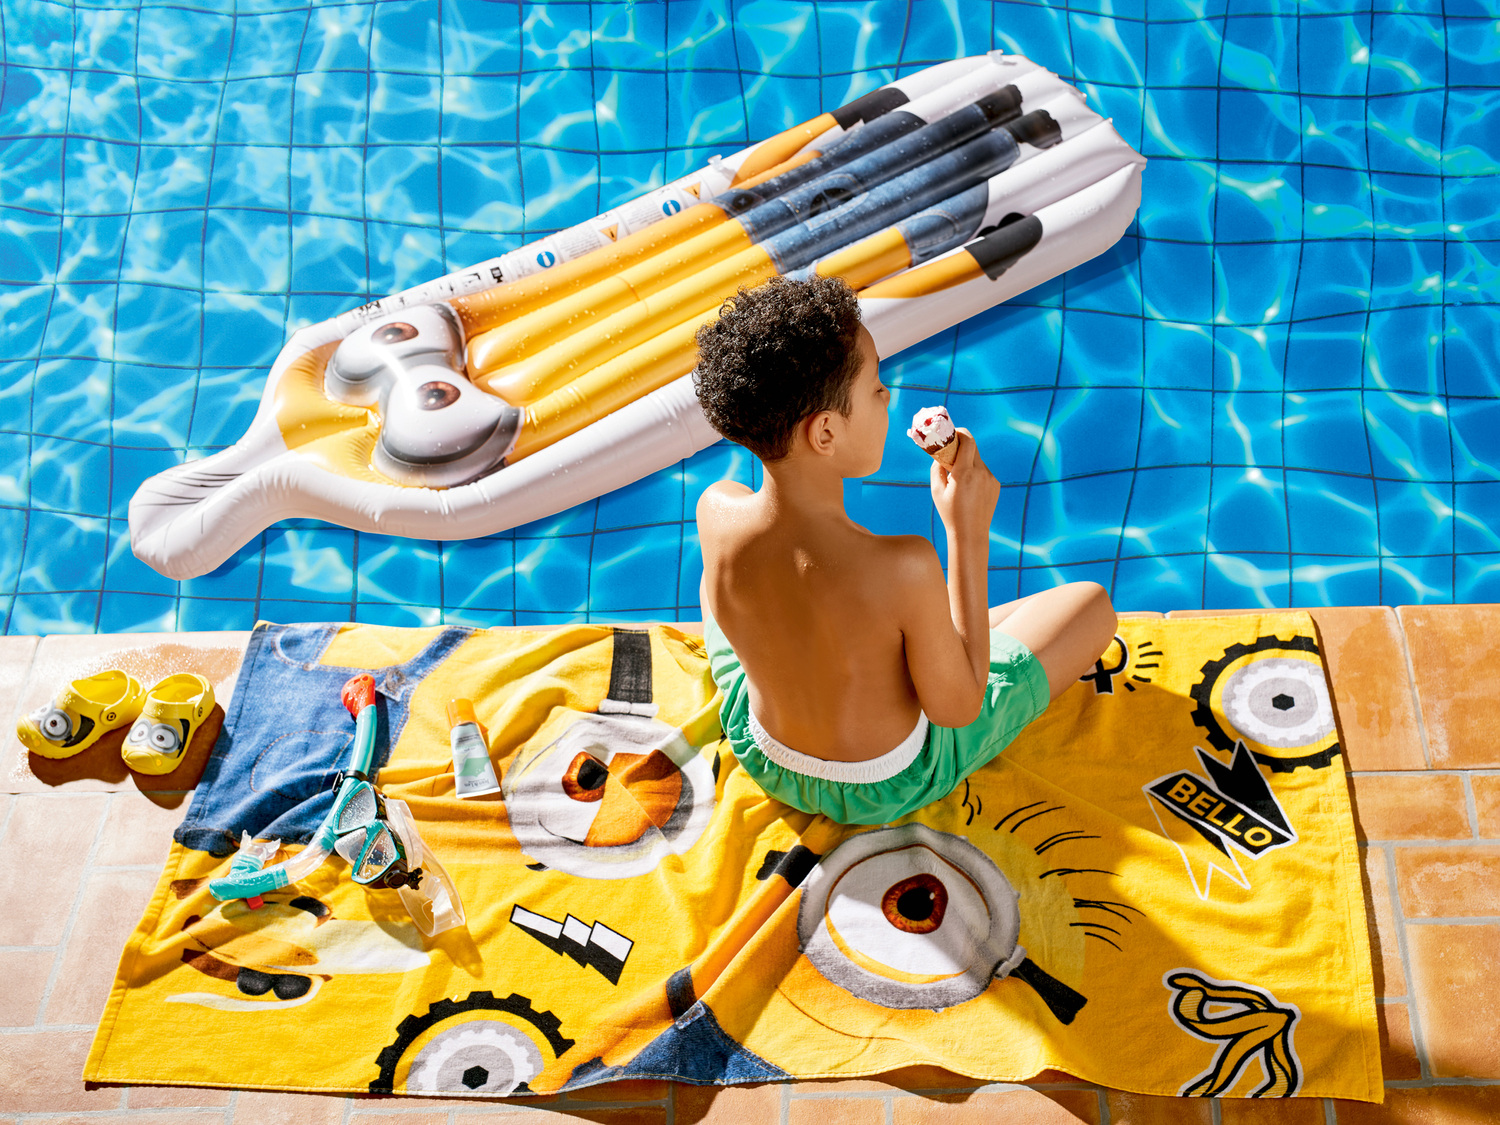 Accessoire de jeux et natation gonflable chez , le prix 9.99 € 
Au choix : 
- ...